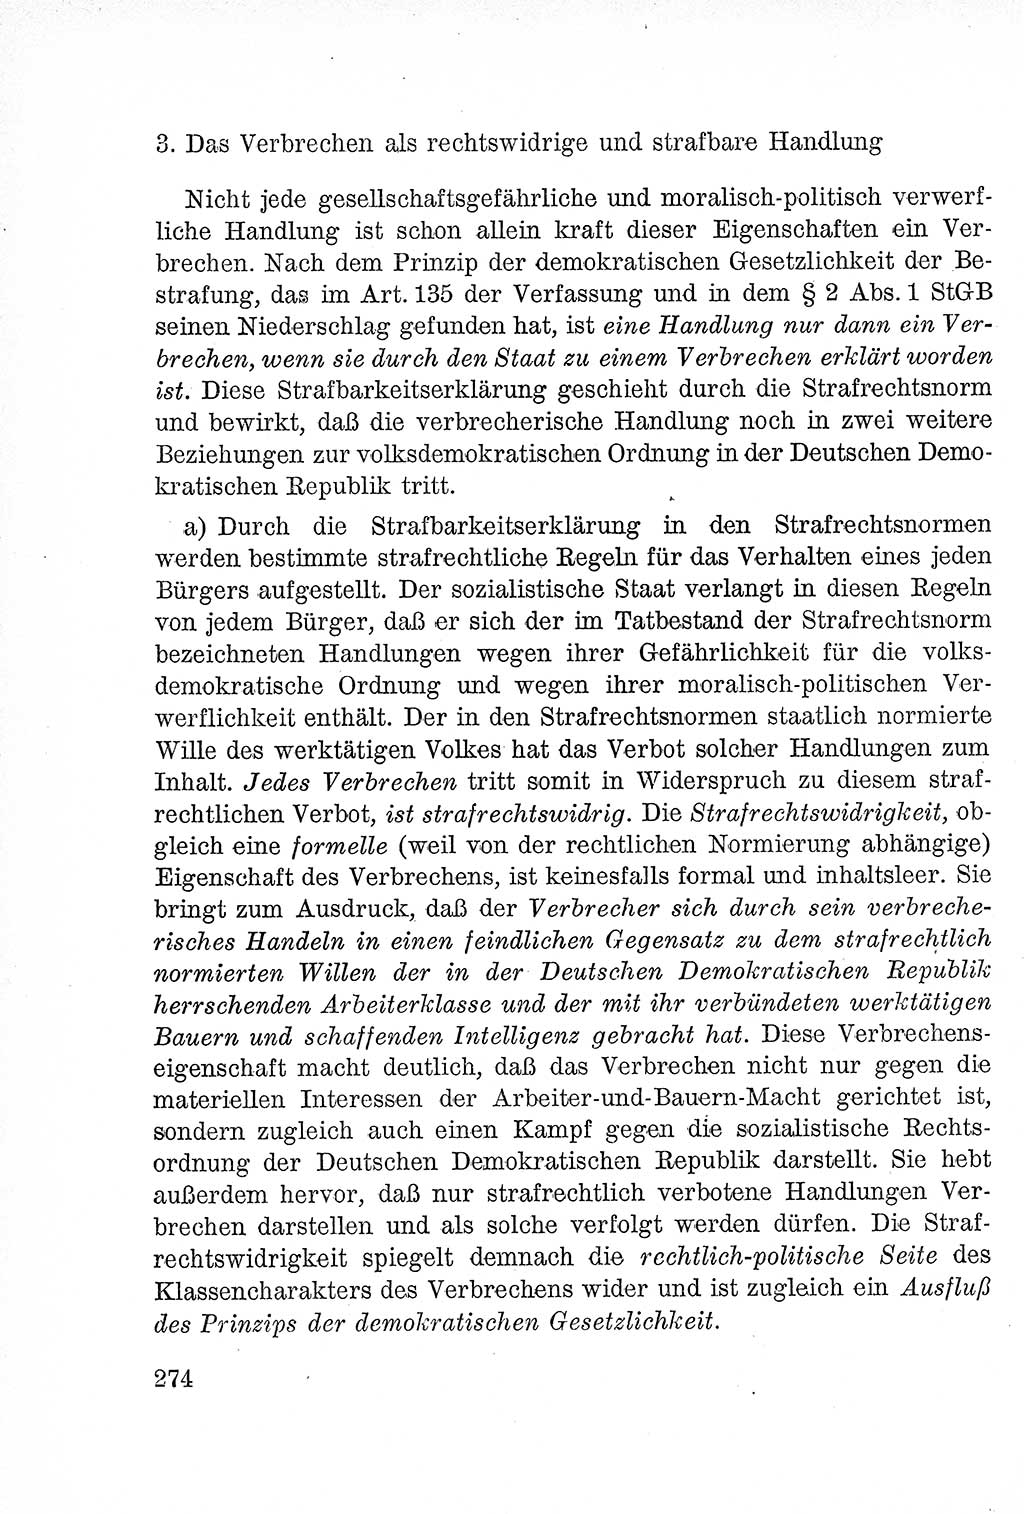 Lehrbuch des Strafrechts der Deutschen Demokratischen Republik (DDR), Allgemeiner Teil 1957, Seite 274 (Lb. Strafr. DDR AT 1957, S. 274)